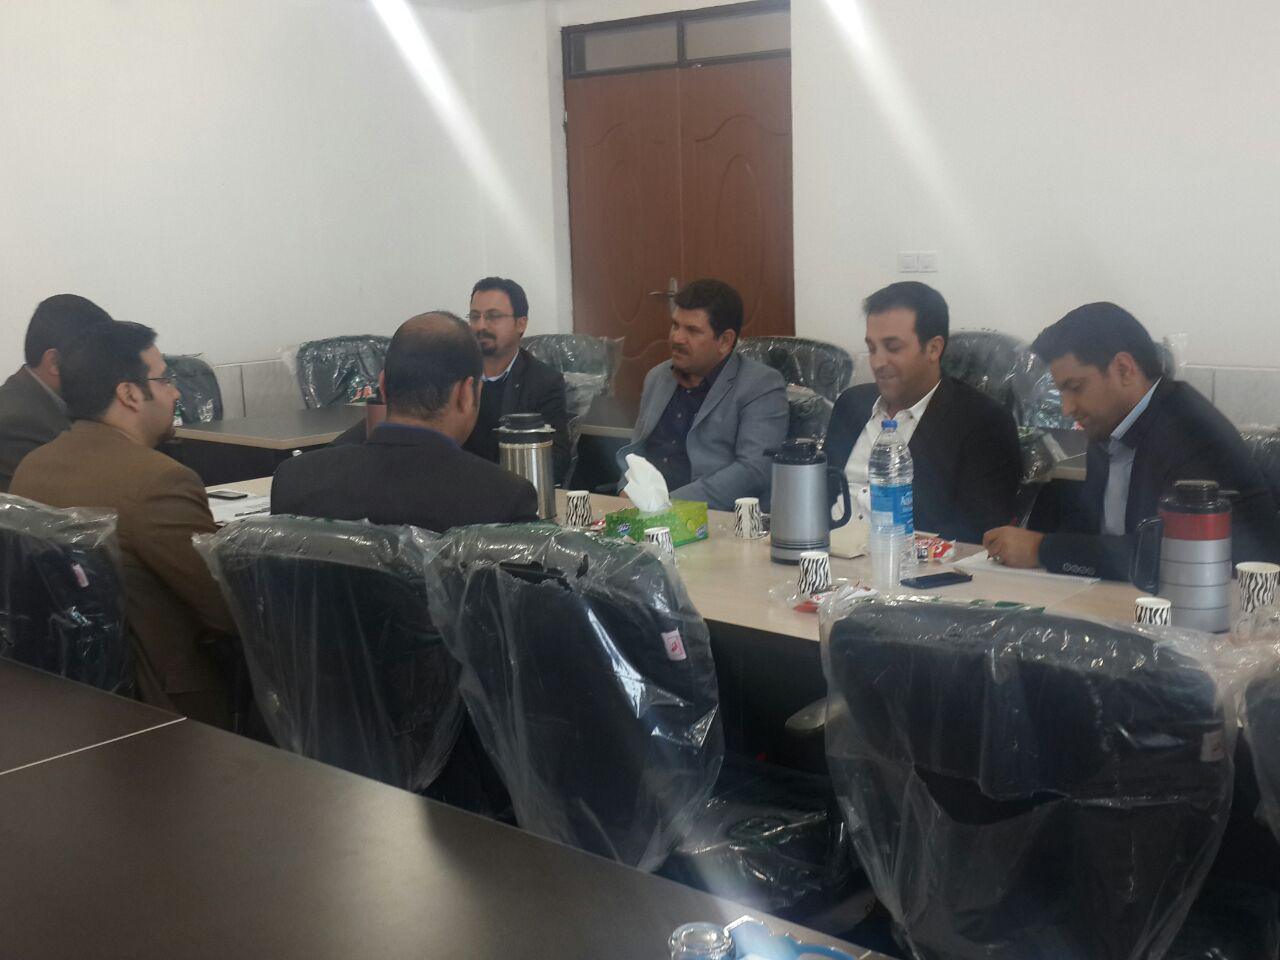  جلسه شورای راهبردی کانون بسیج حقوق دانان شیراز